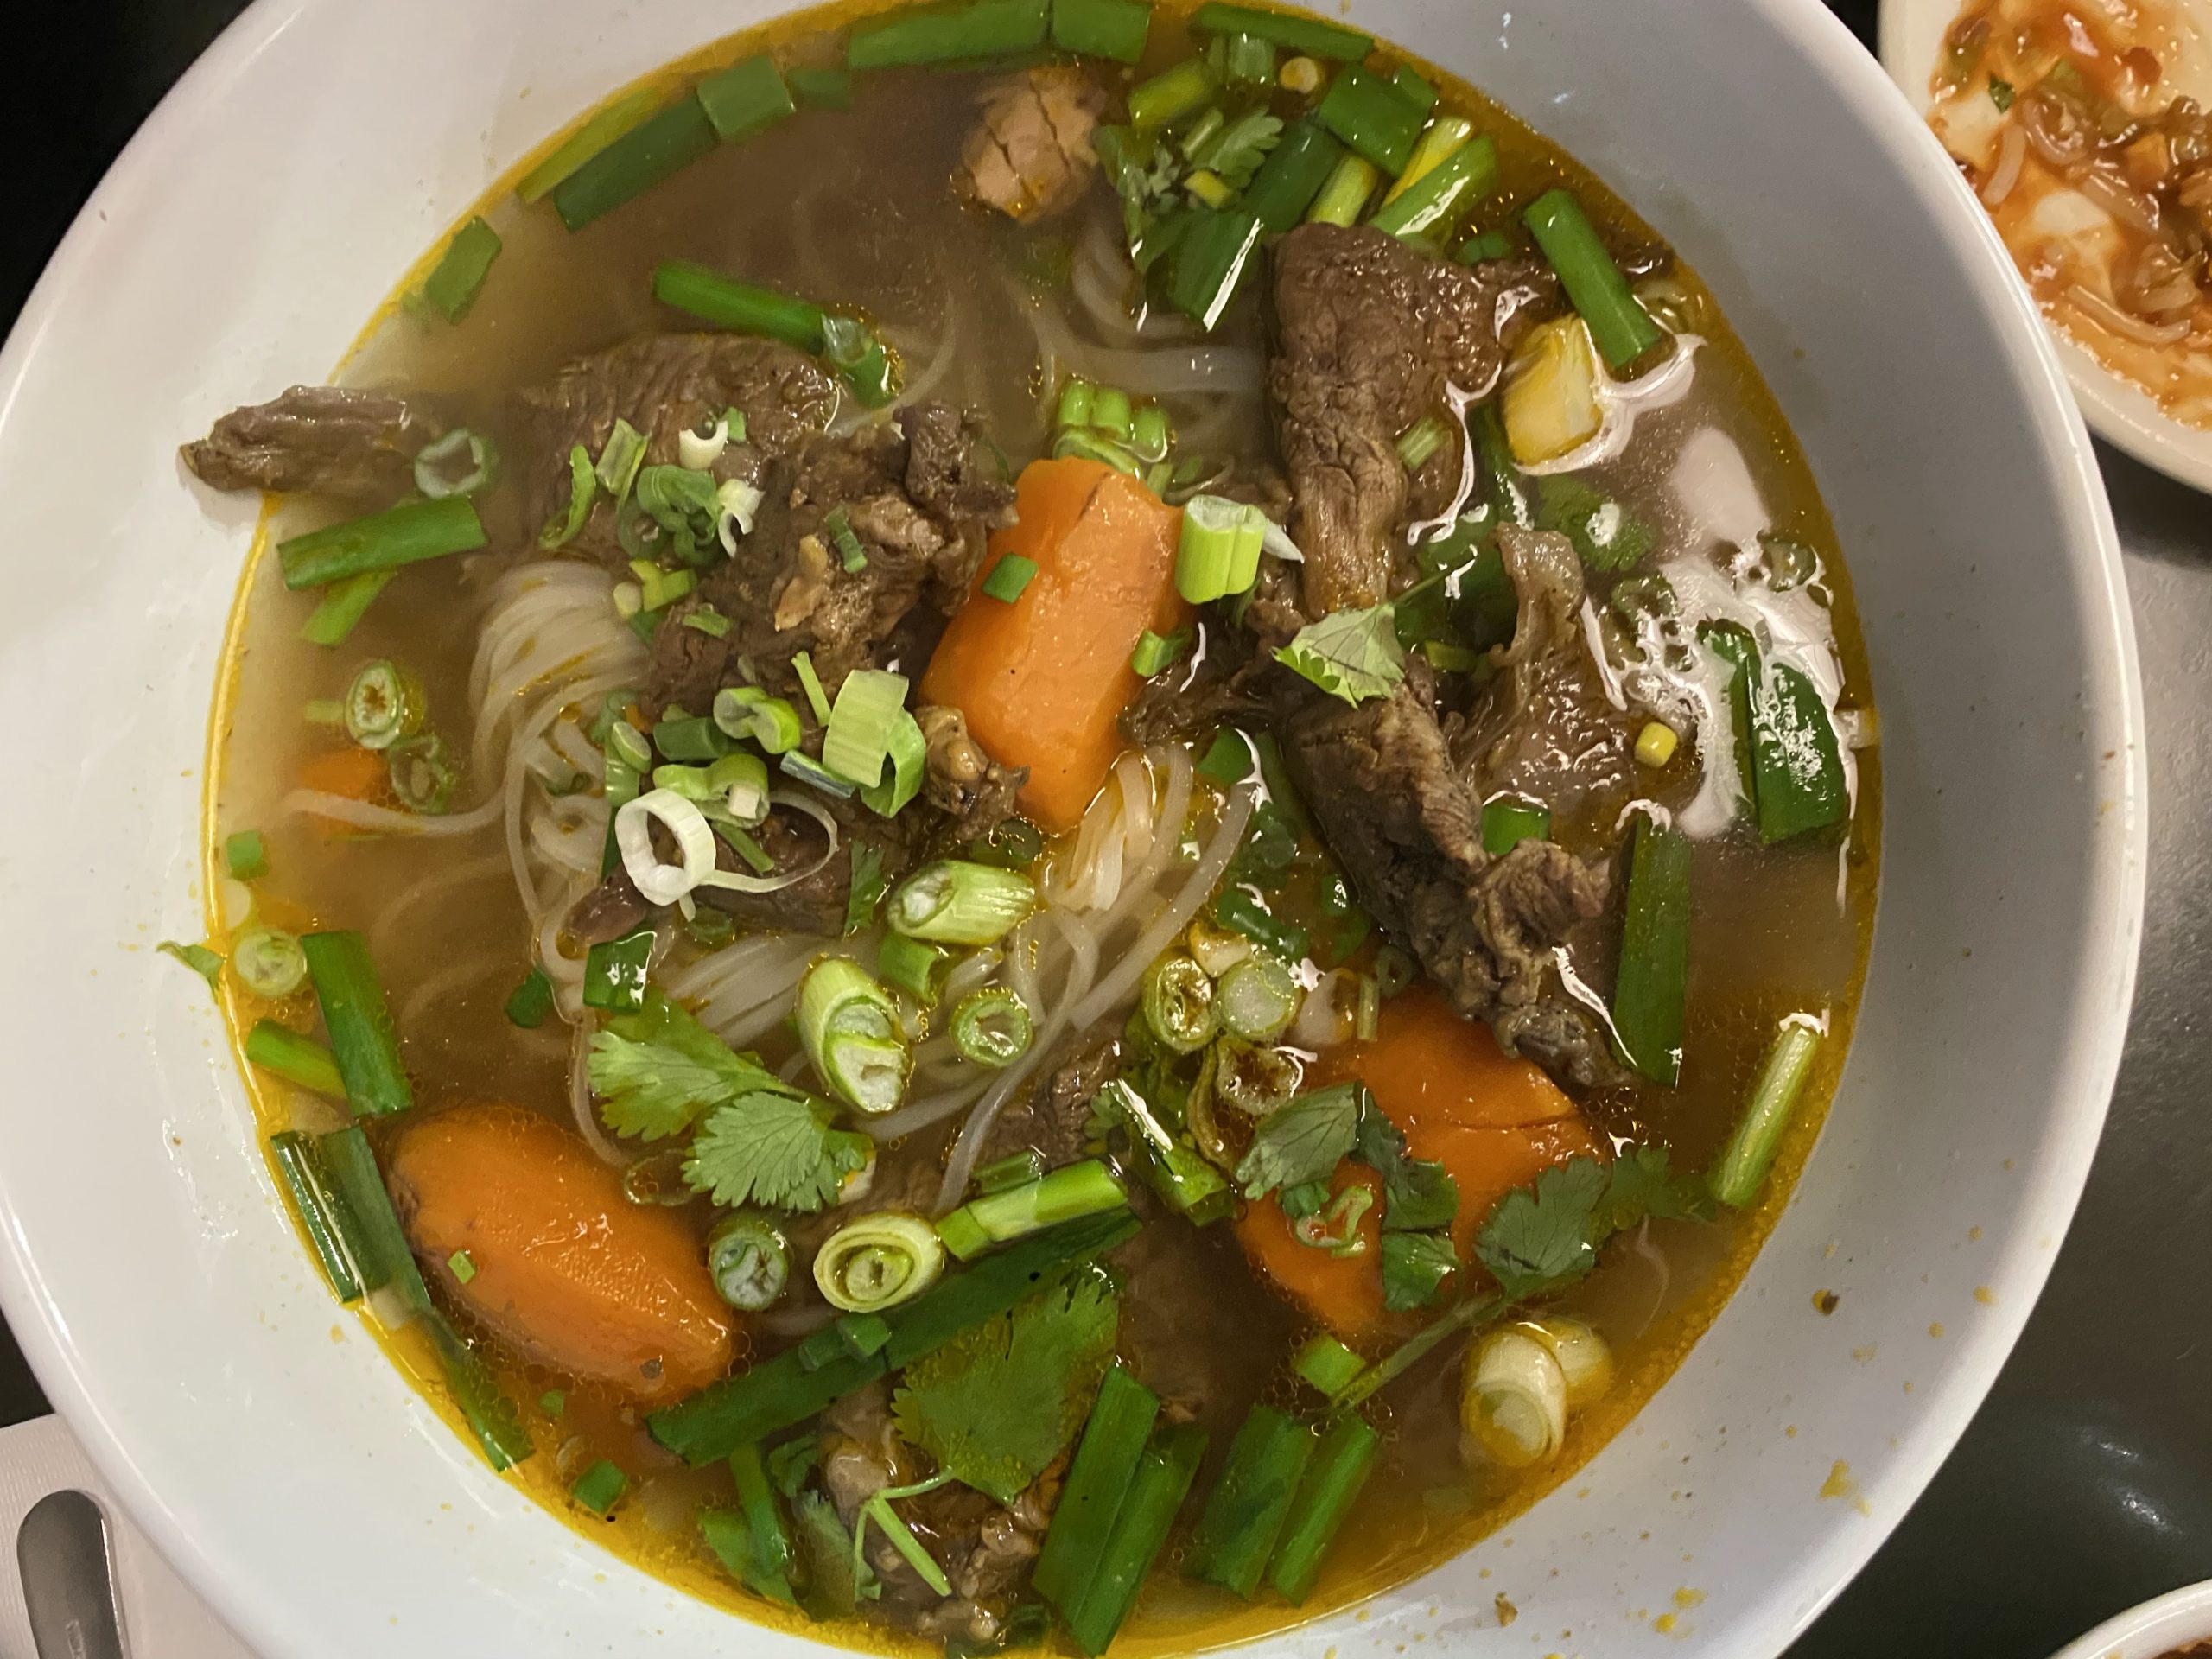 I got my pho fix at the original Saigon – and discovered a new soup